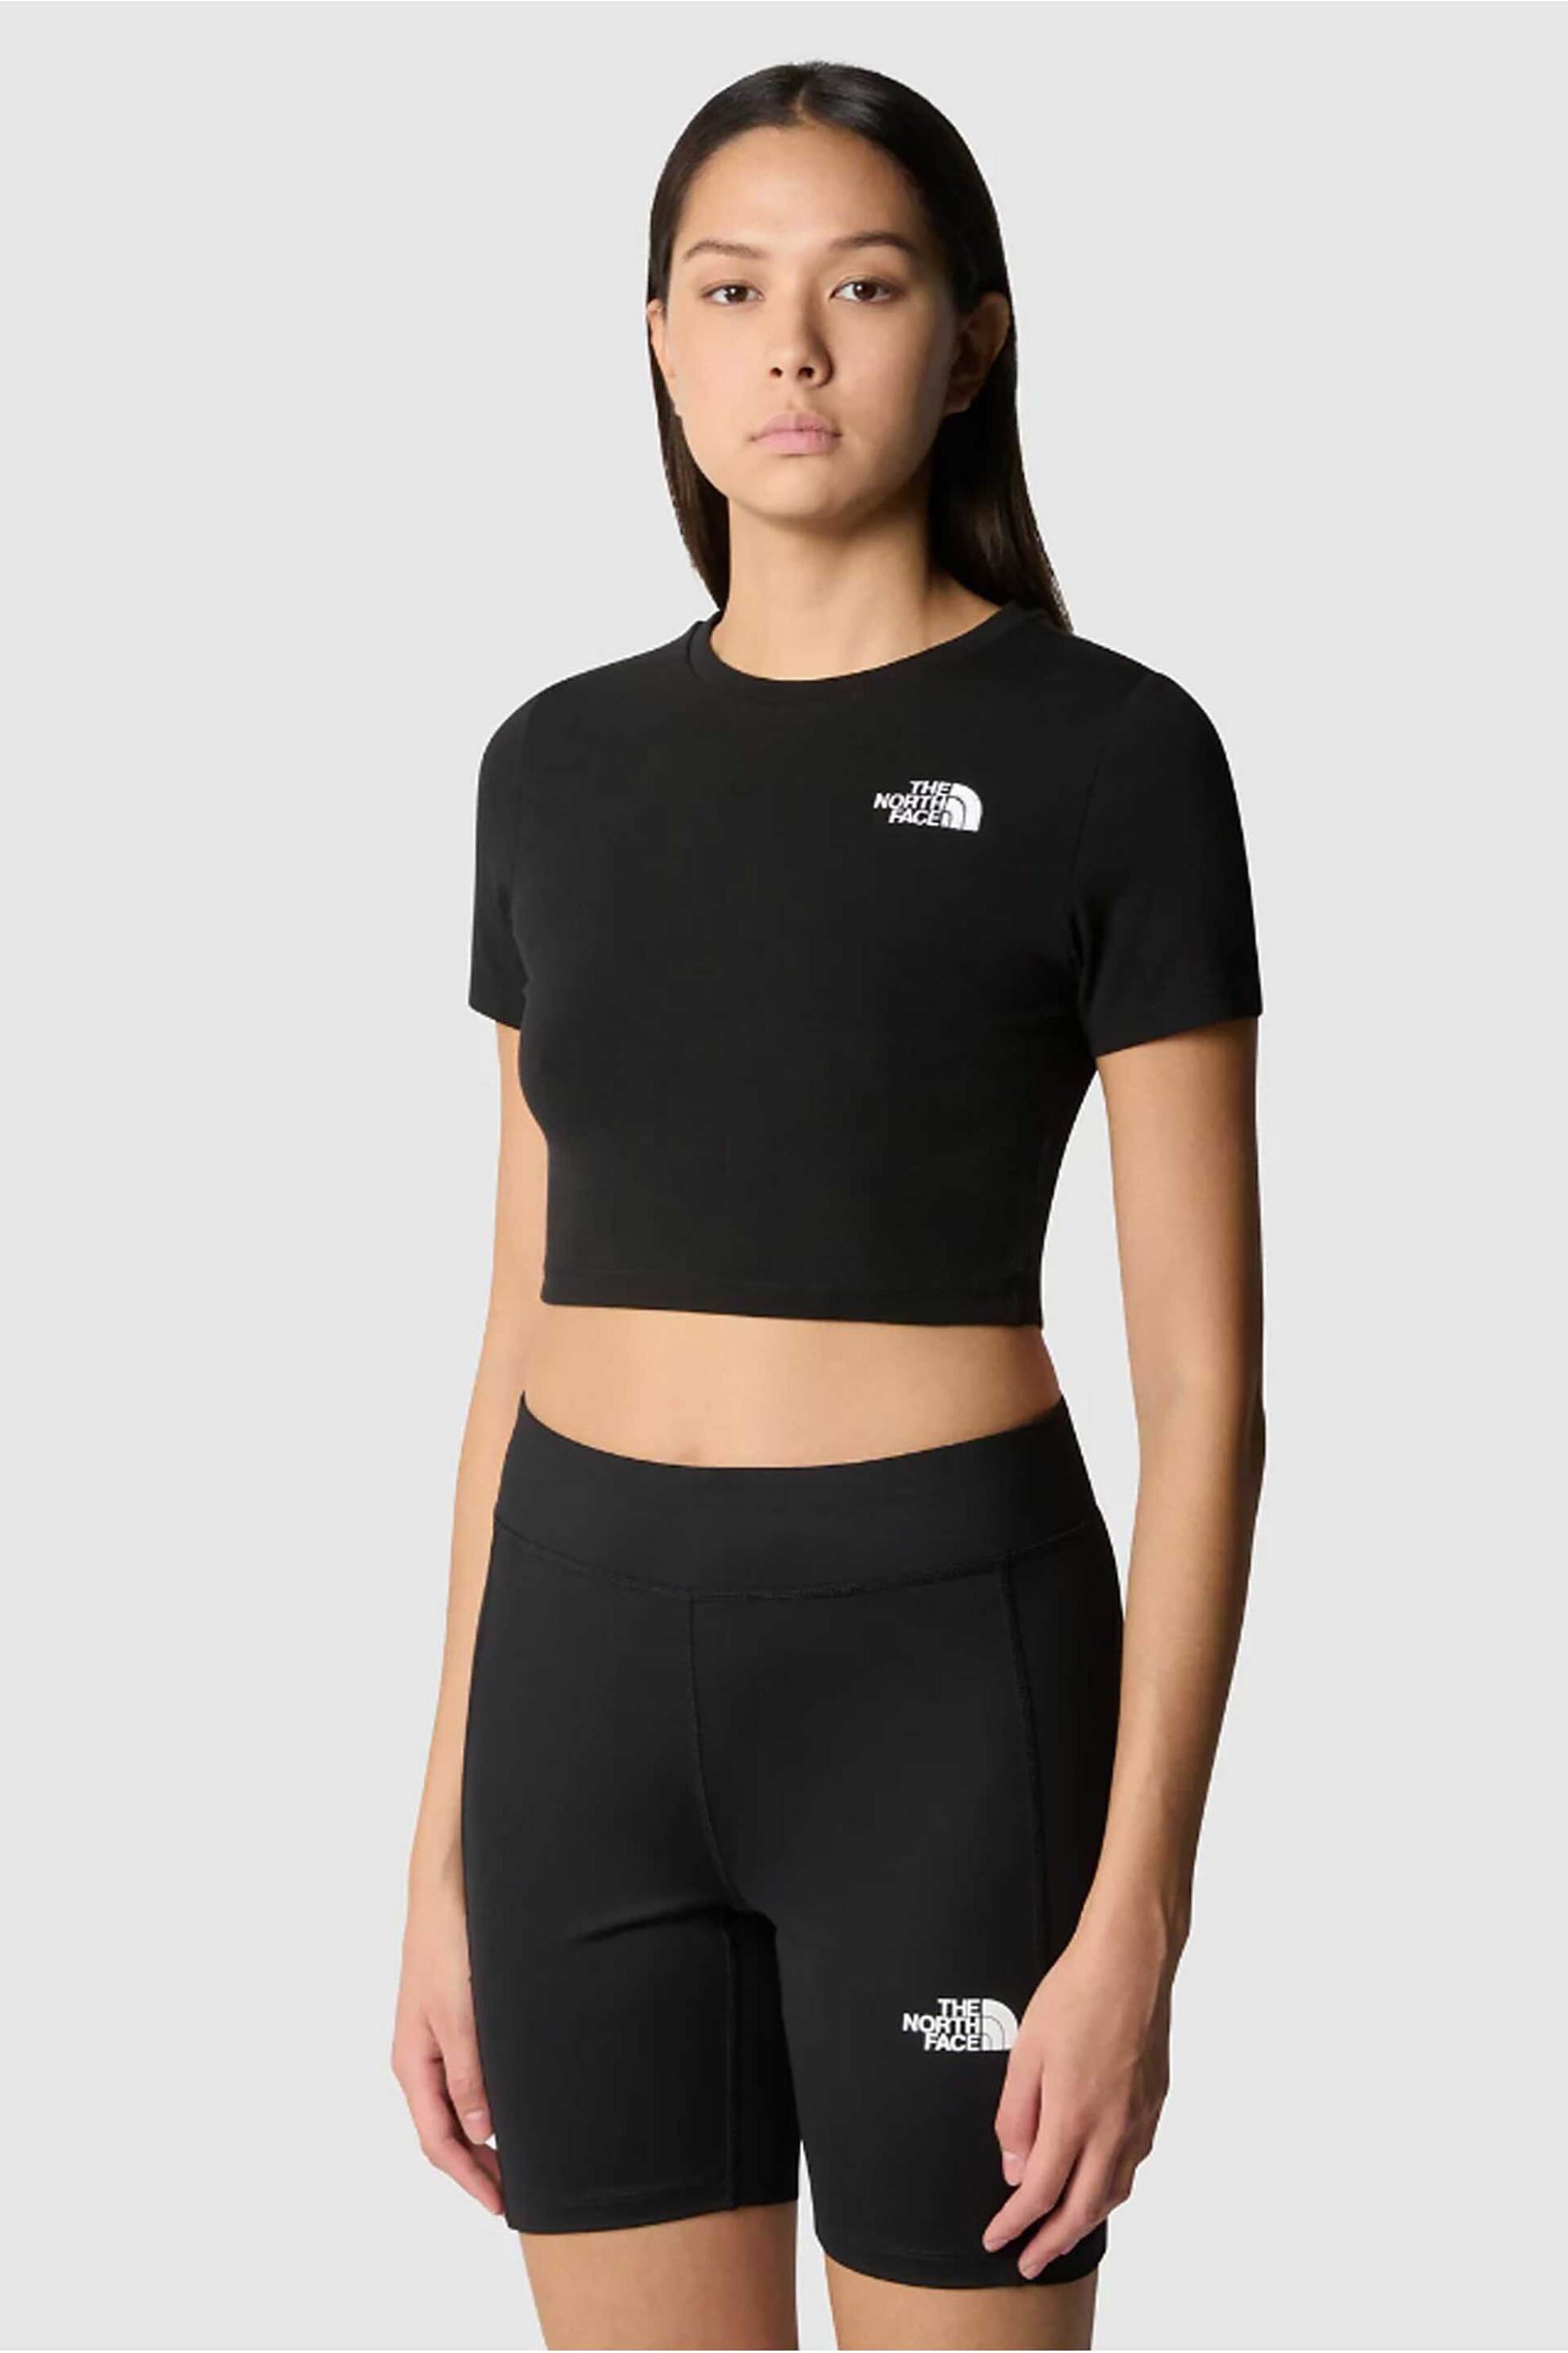 Γυναικεία Ρούχα & Αξεσουάρ > Γυναικεία Ρούχα > Γυναικεία Τοπ > Γυναικεία T-Shirts The North Face γυναικείο cropped T-shirt μονόχρωμο με κεντημένο λογότυπο "Essential" - NF0A55AOJK31 Μαύρο